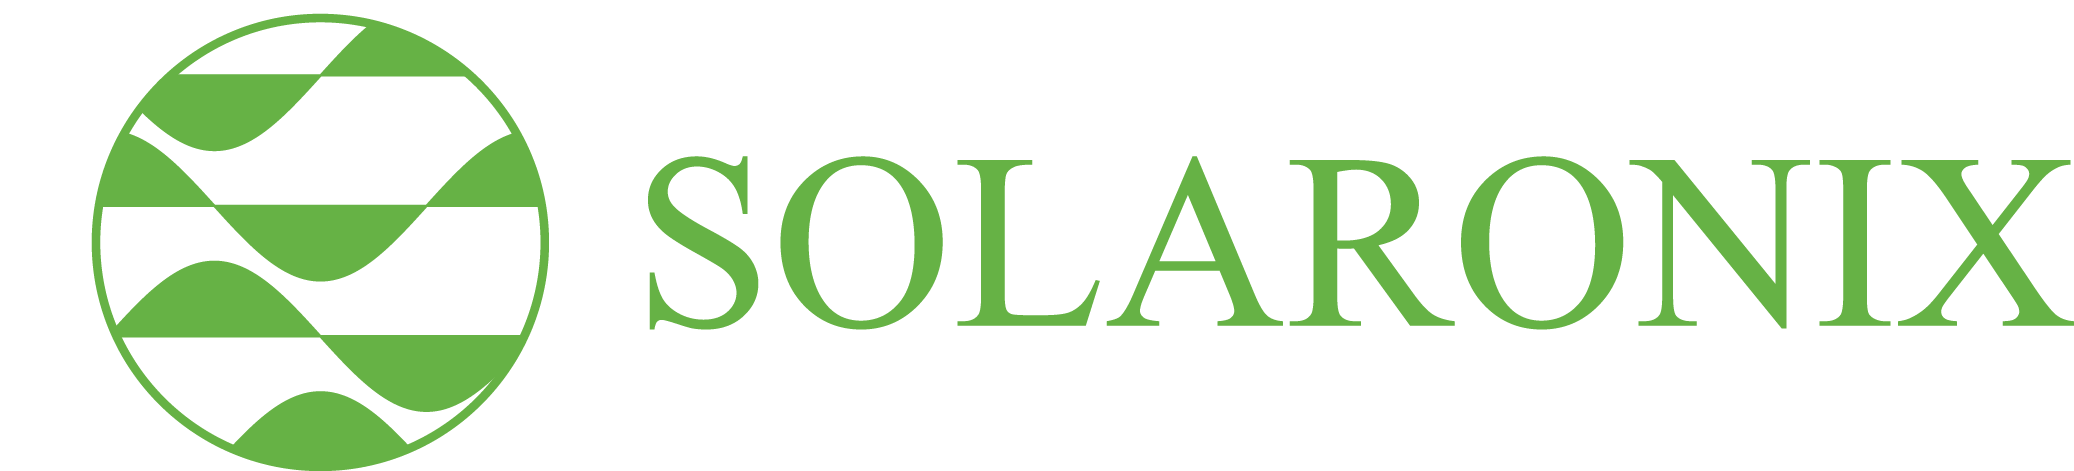 Solaronix_Logo_Green